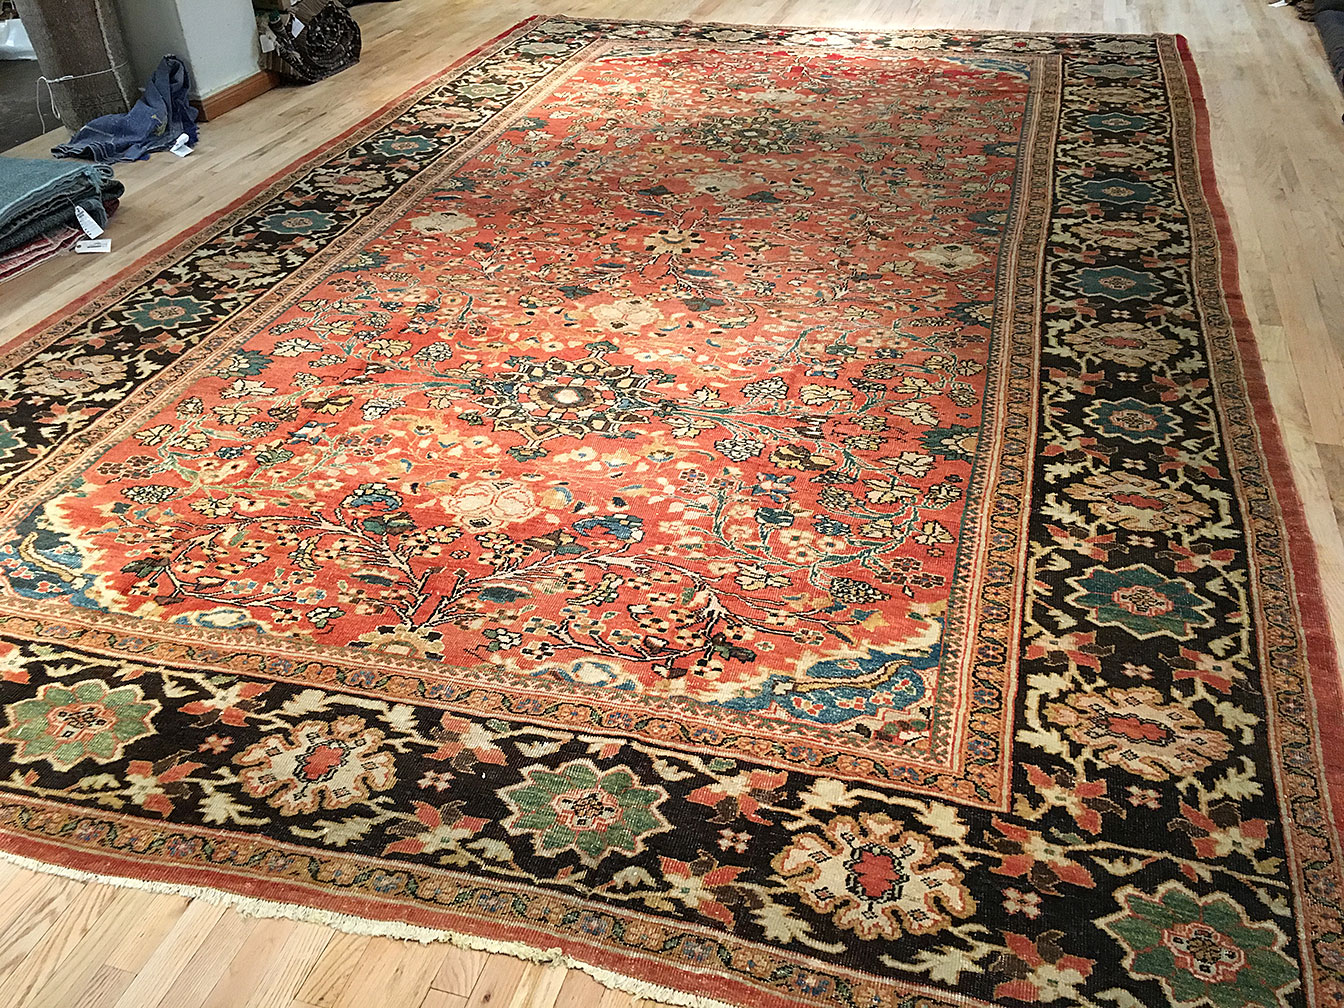 Antique sultan abad Carpet - # 51394